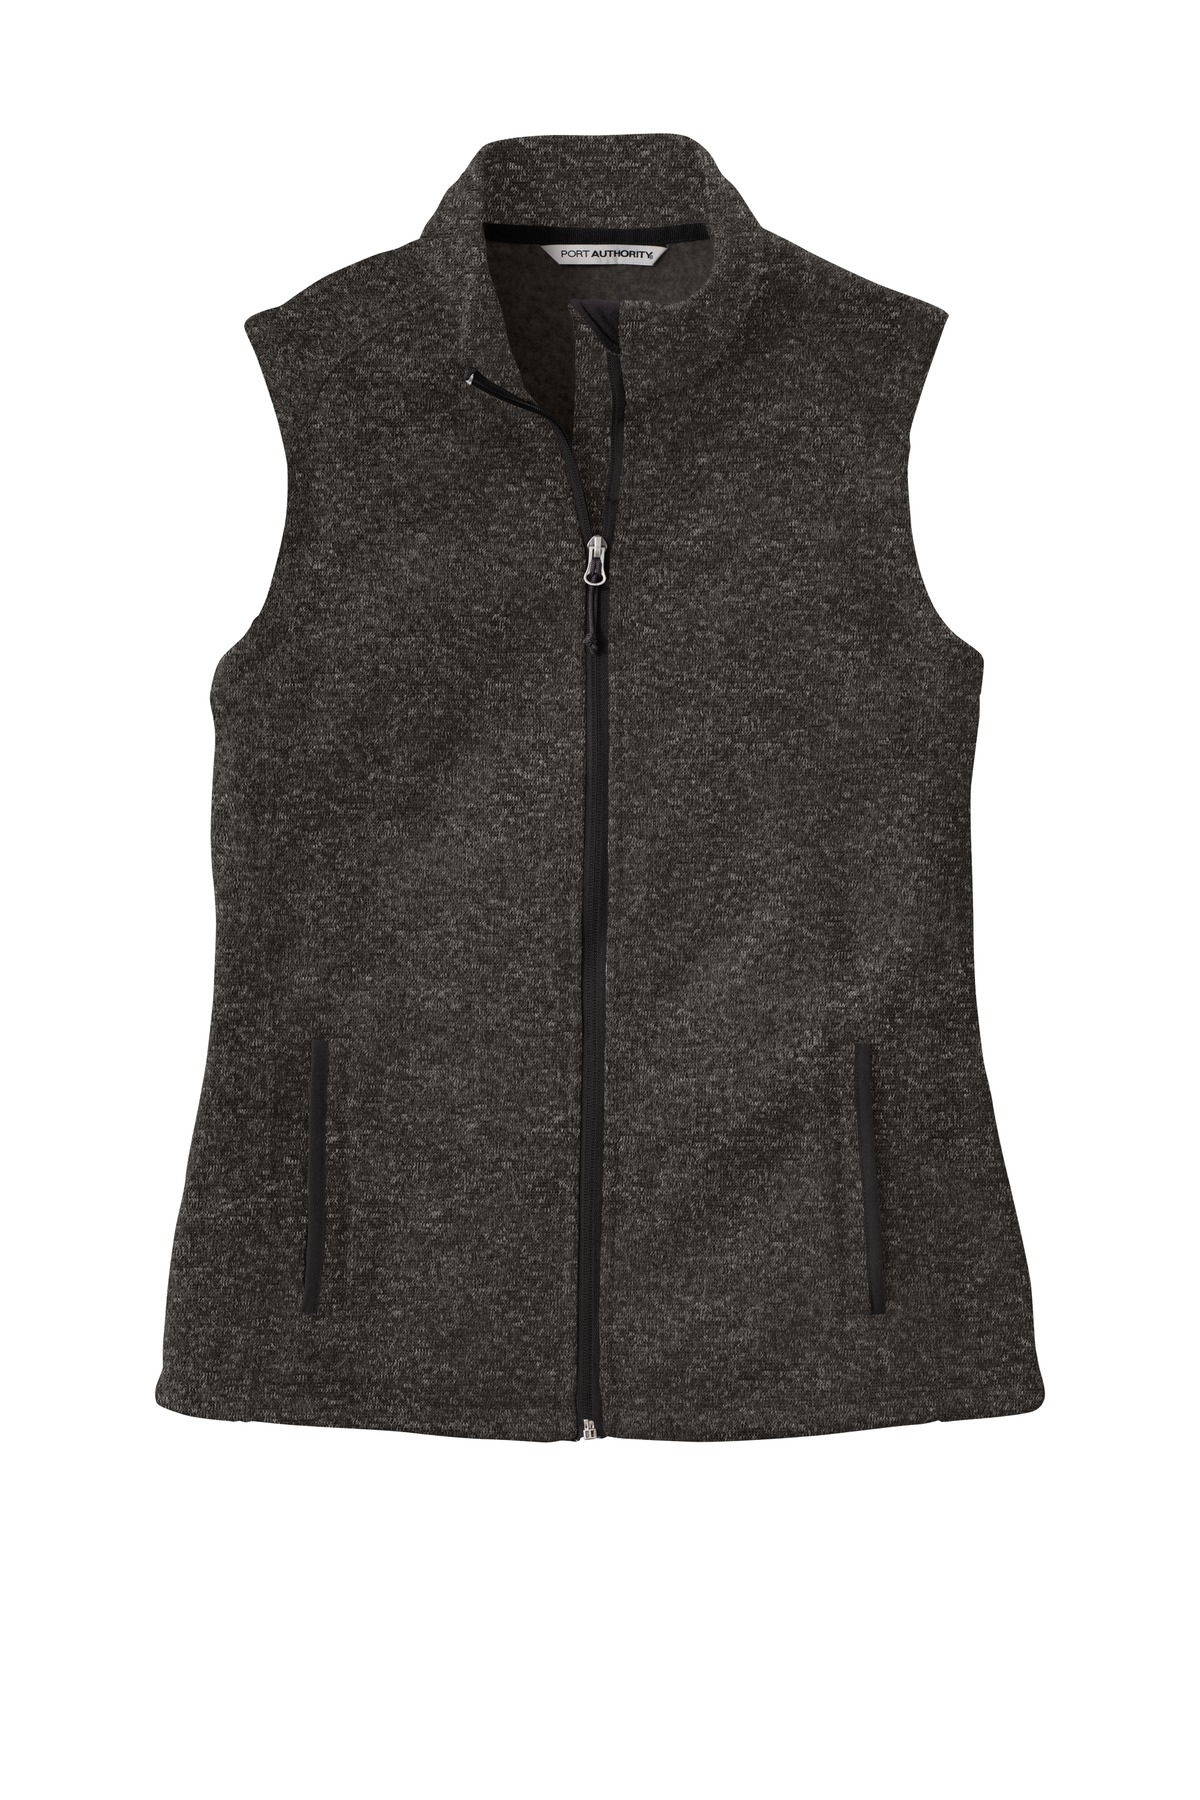 Port Authority Ladies Sweater Fleece Vest L236 – Dynasty Custom